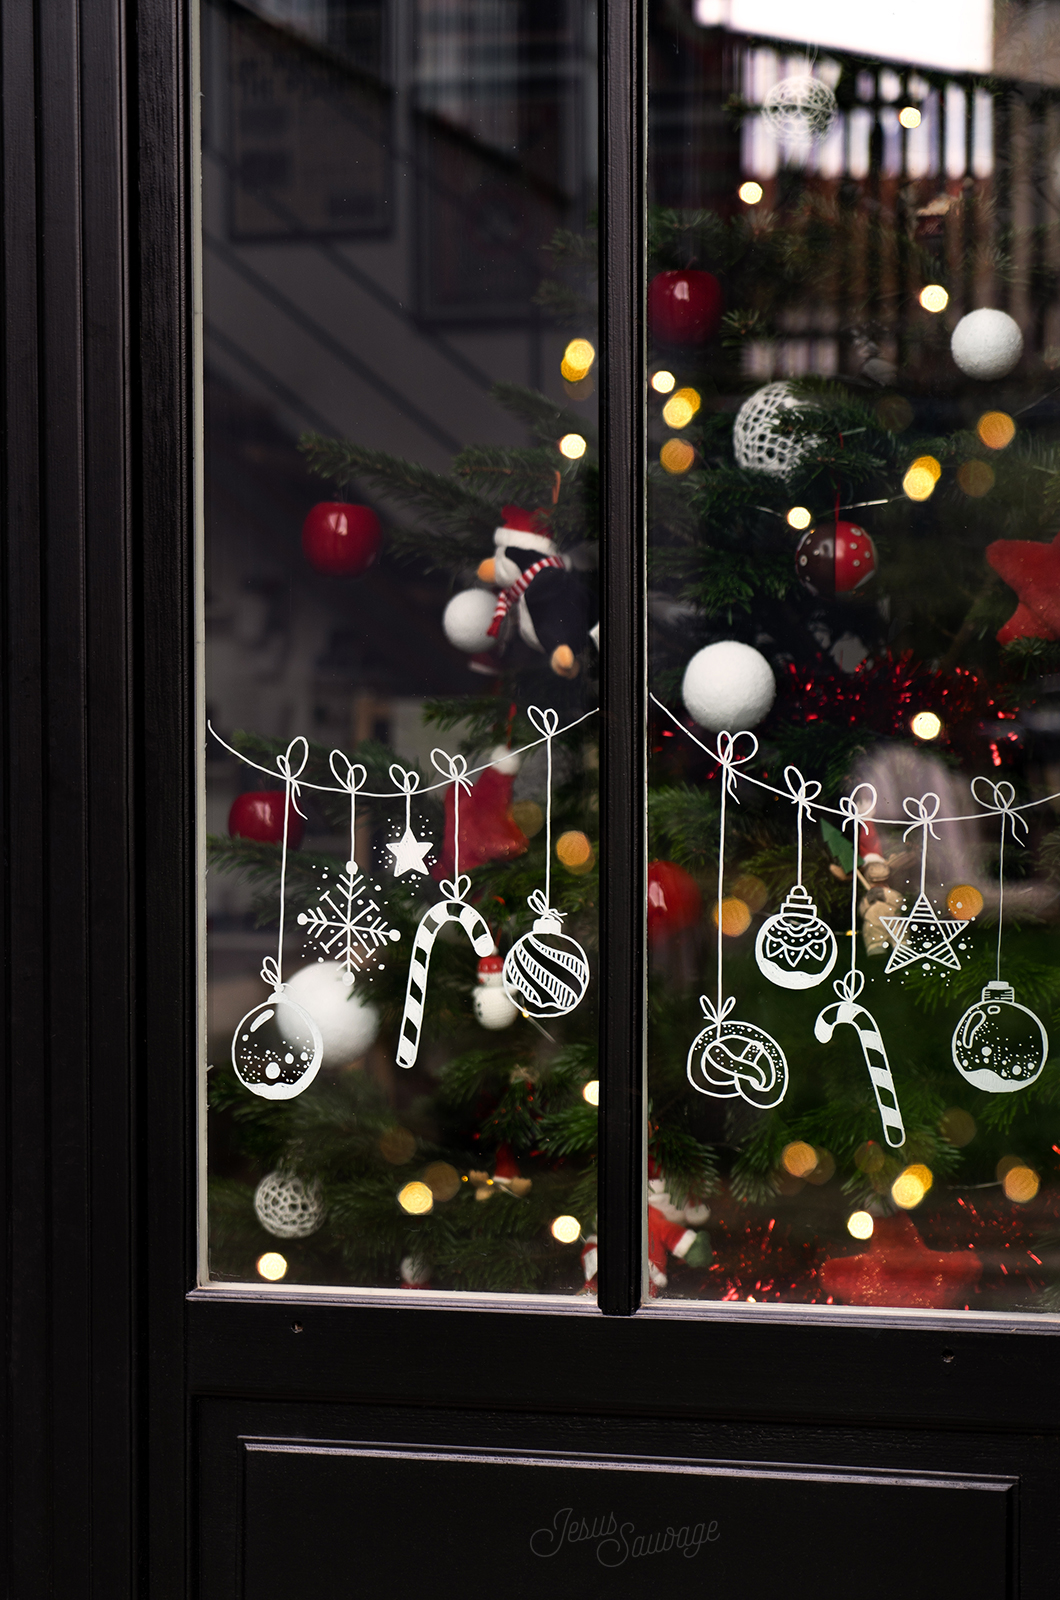 Déco de Noël : comment décorer les vitres avec du Blanc de Meudon ?